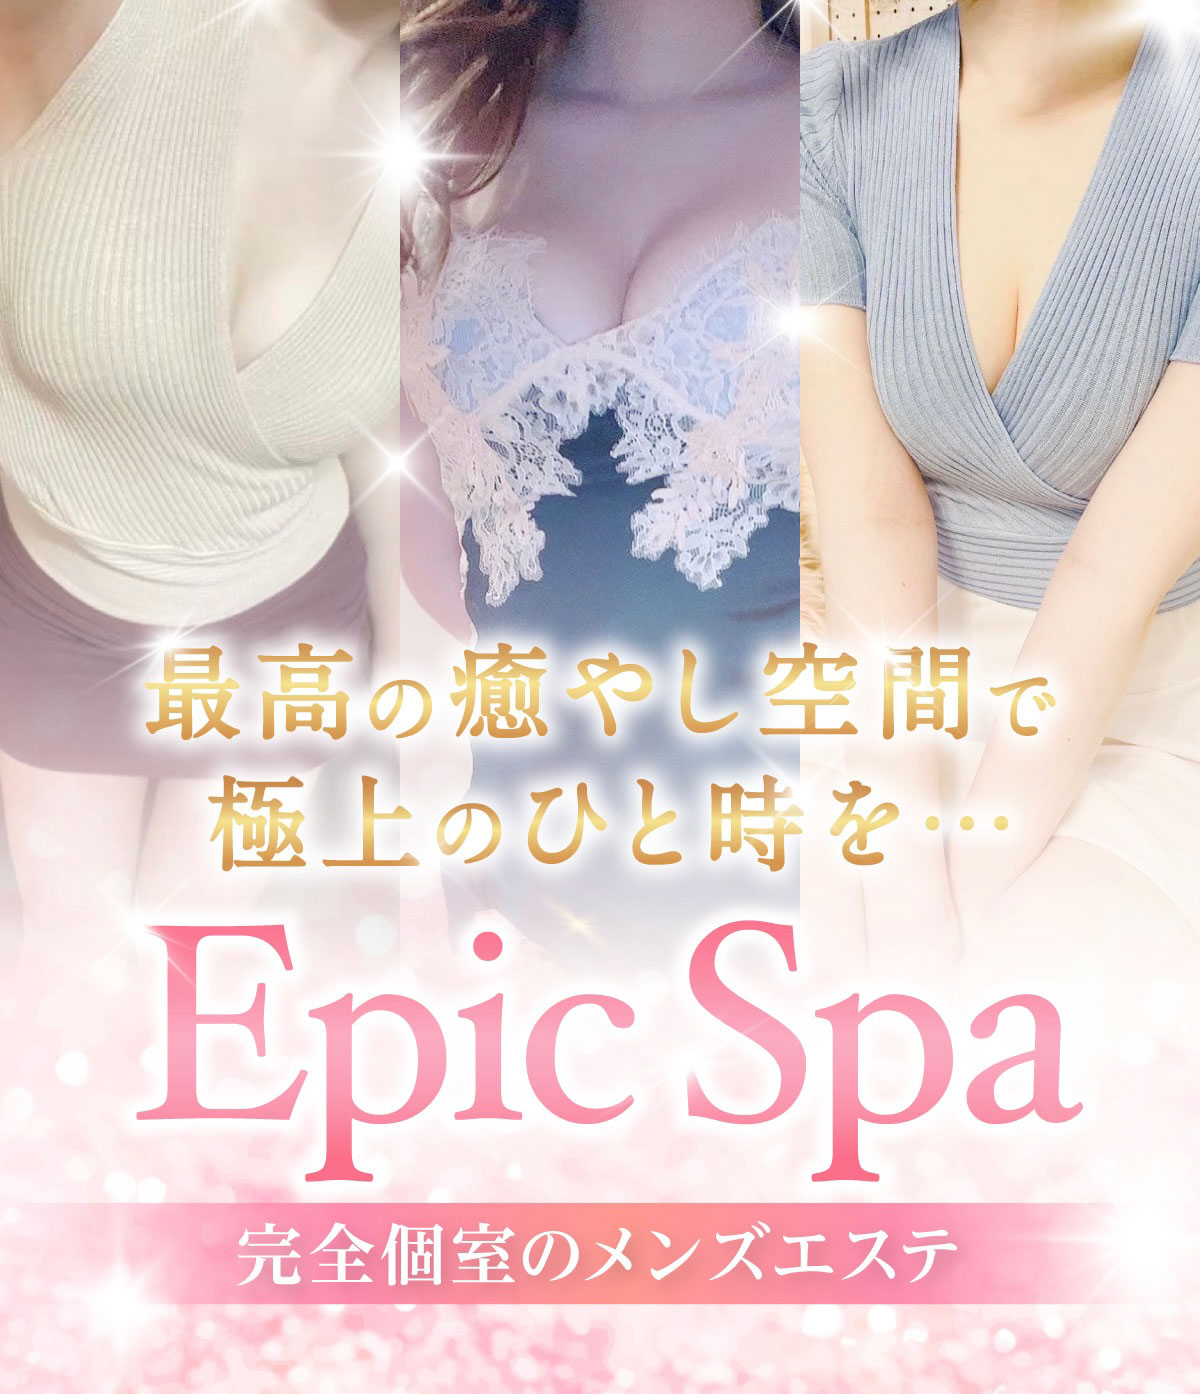 epic spa【エピックスパ】のロゴ